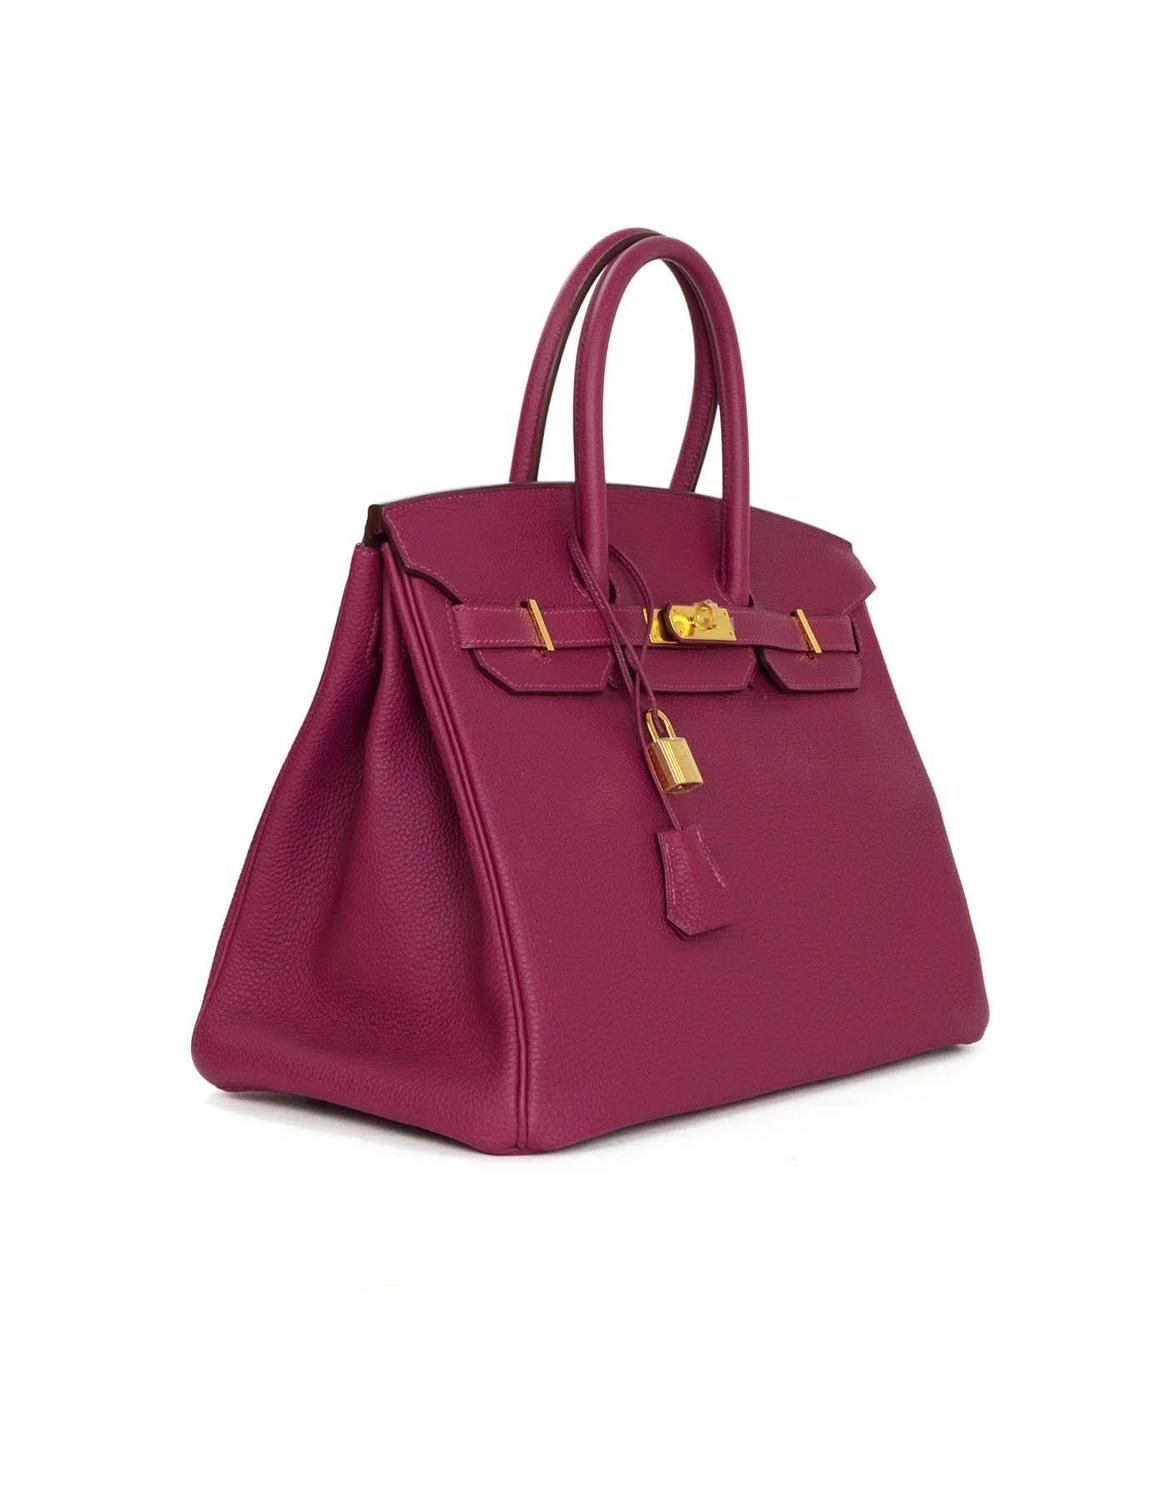 Hermes LIKE NEW Violet Tosca Togo Leather 35cm Birkin Bag w/ Box For Sale at 1stdibs